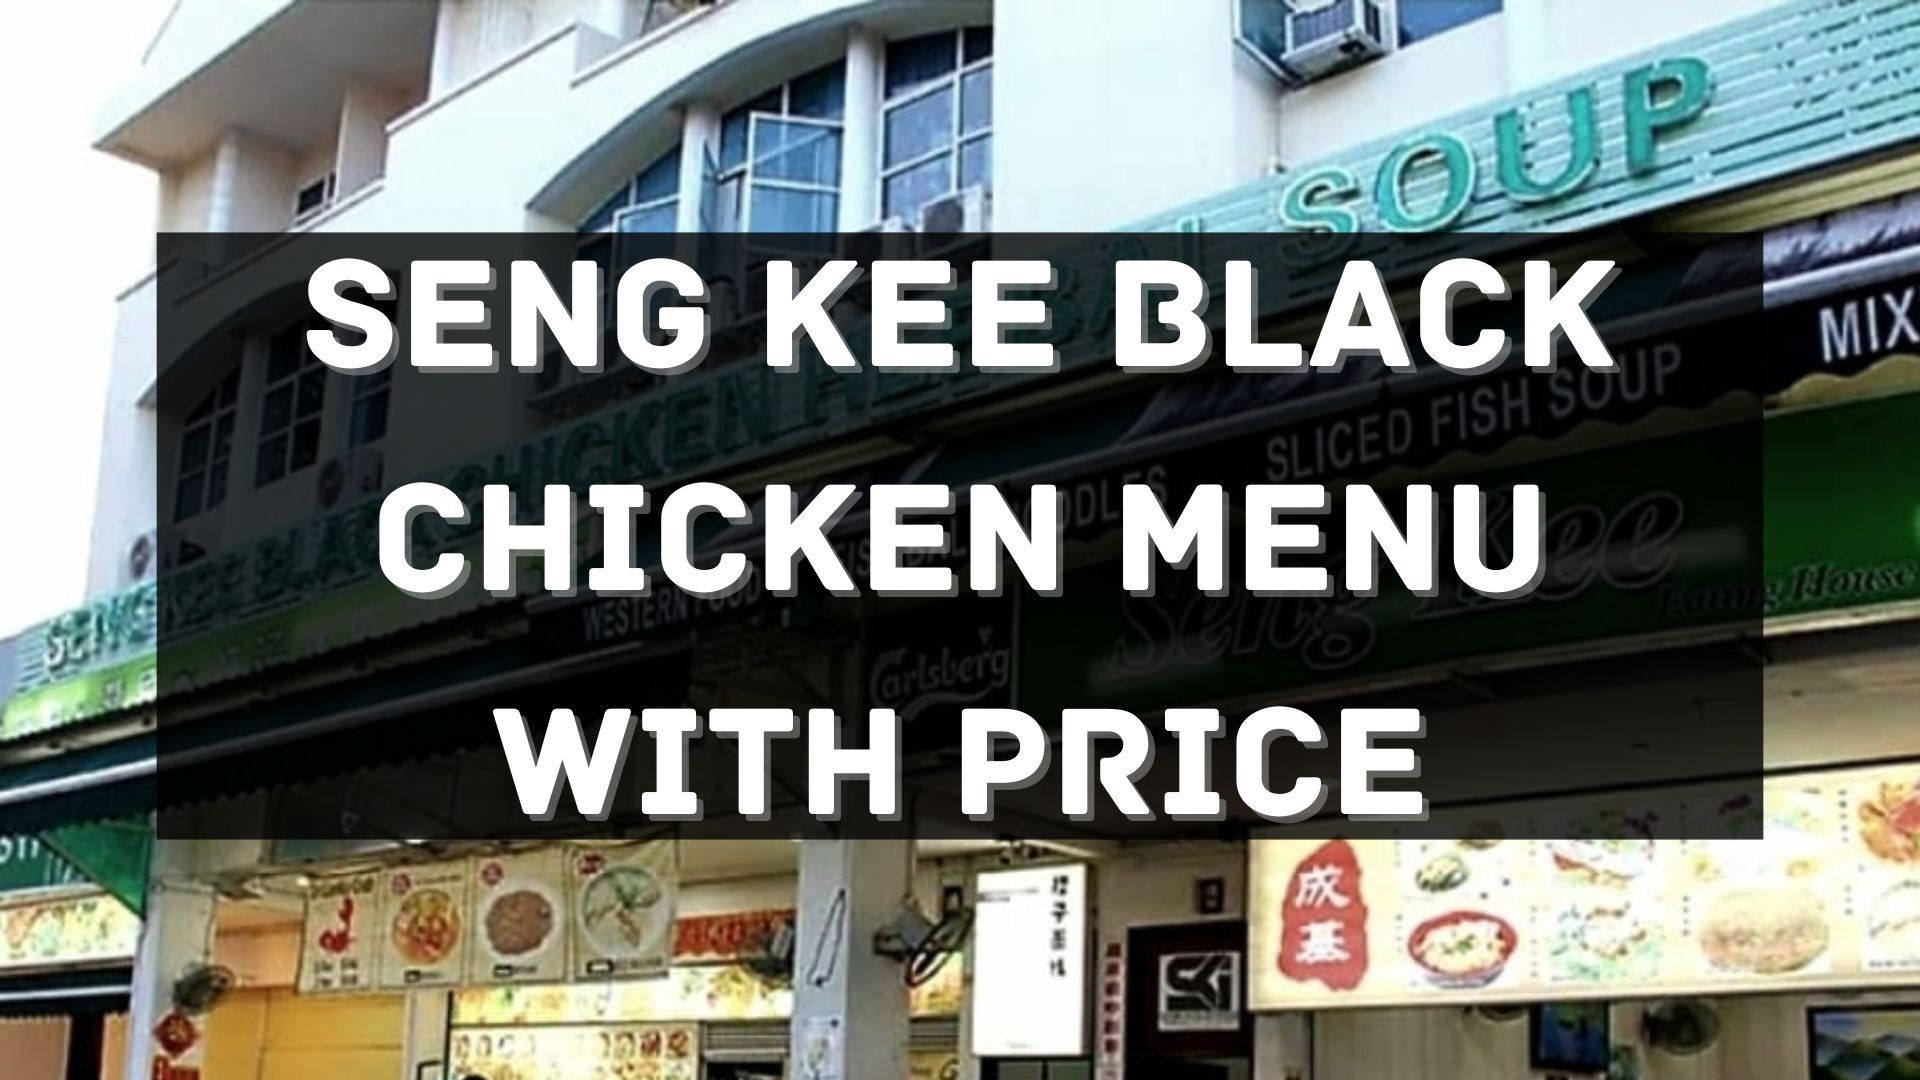 seng kee black chicken menu prices singapore